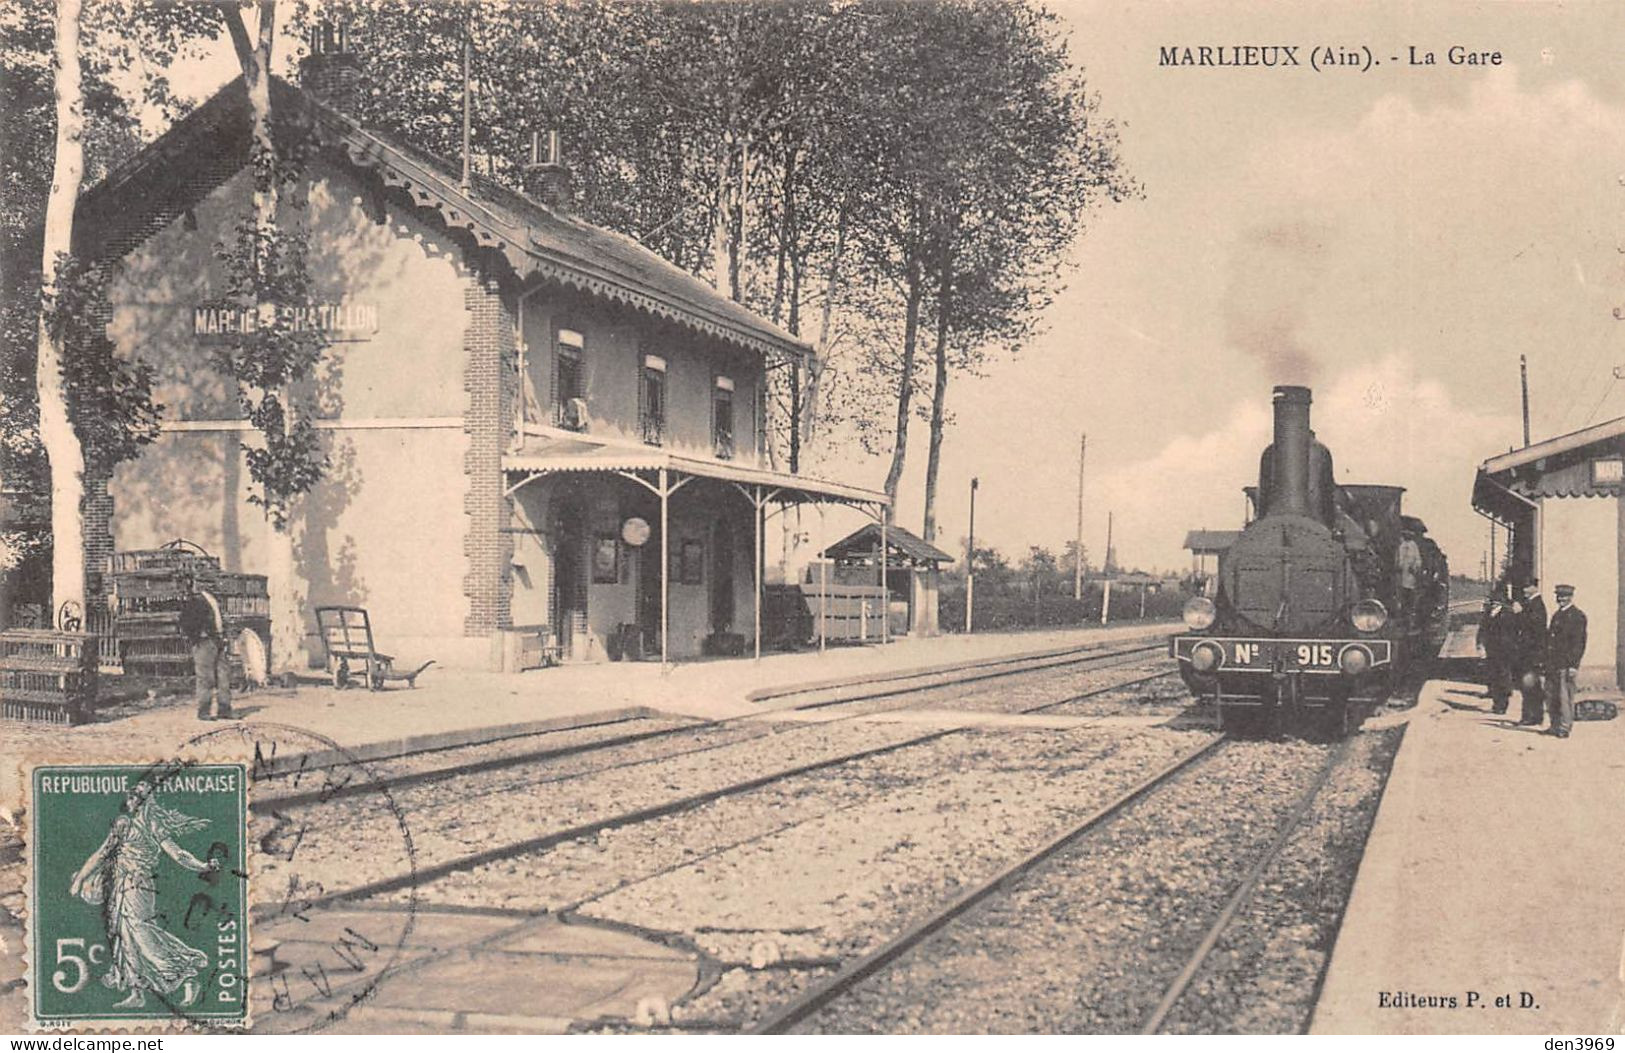 MARLIEUX (Ain) - La Gare Avec Train - Locomotive - Voyagé 1912 (2 Scans) - Unclassified